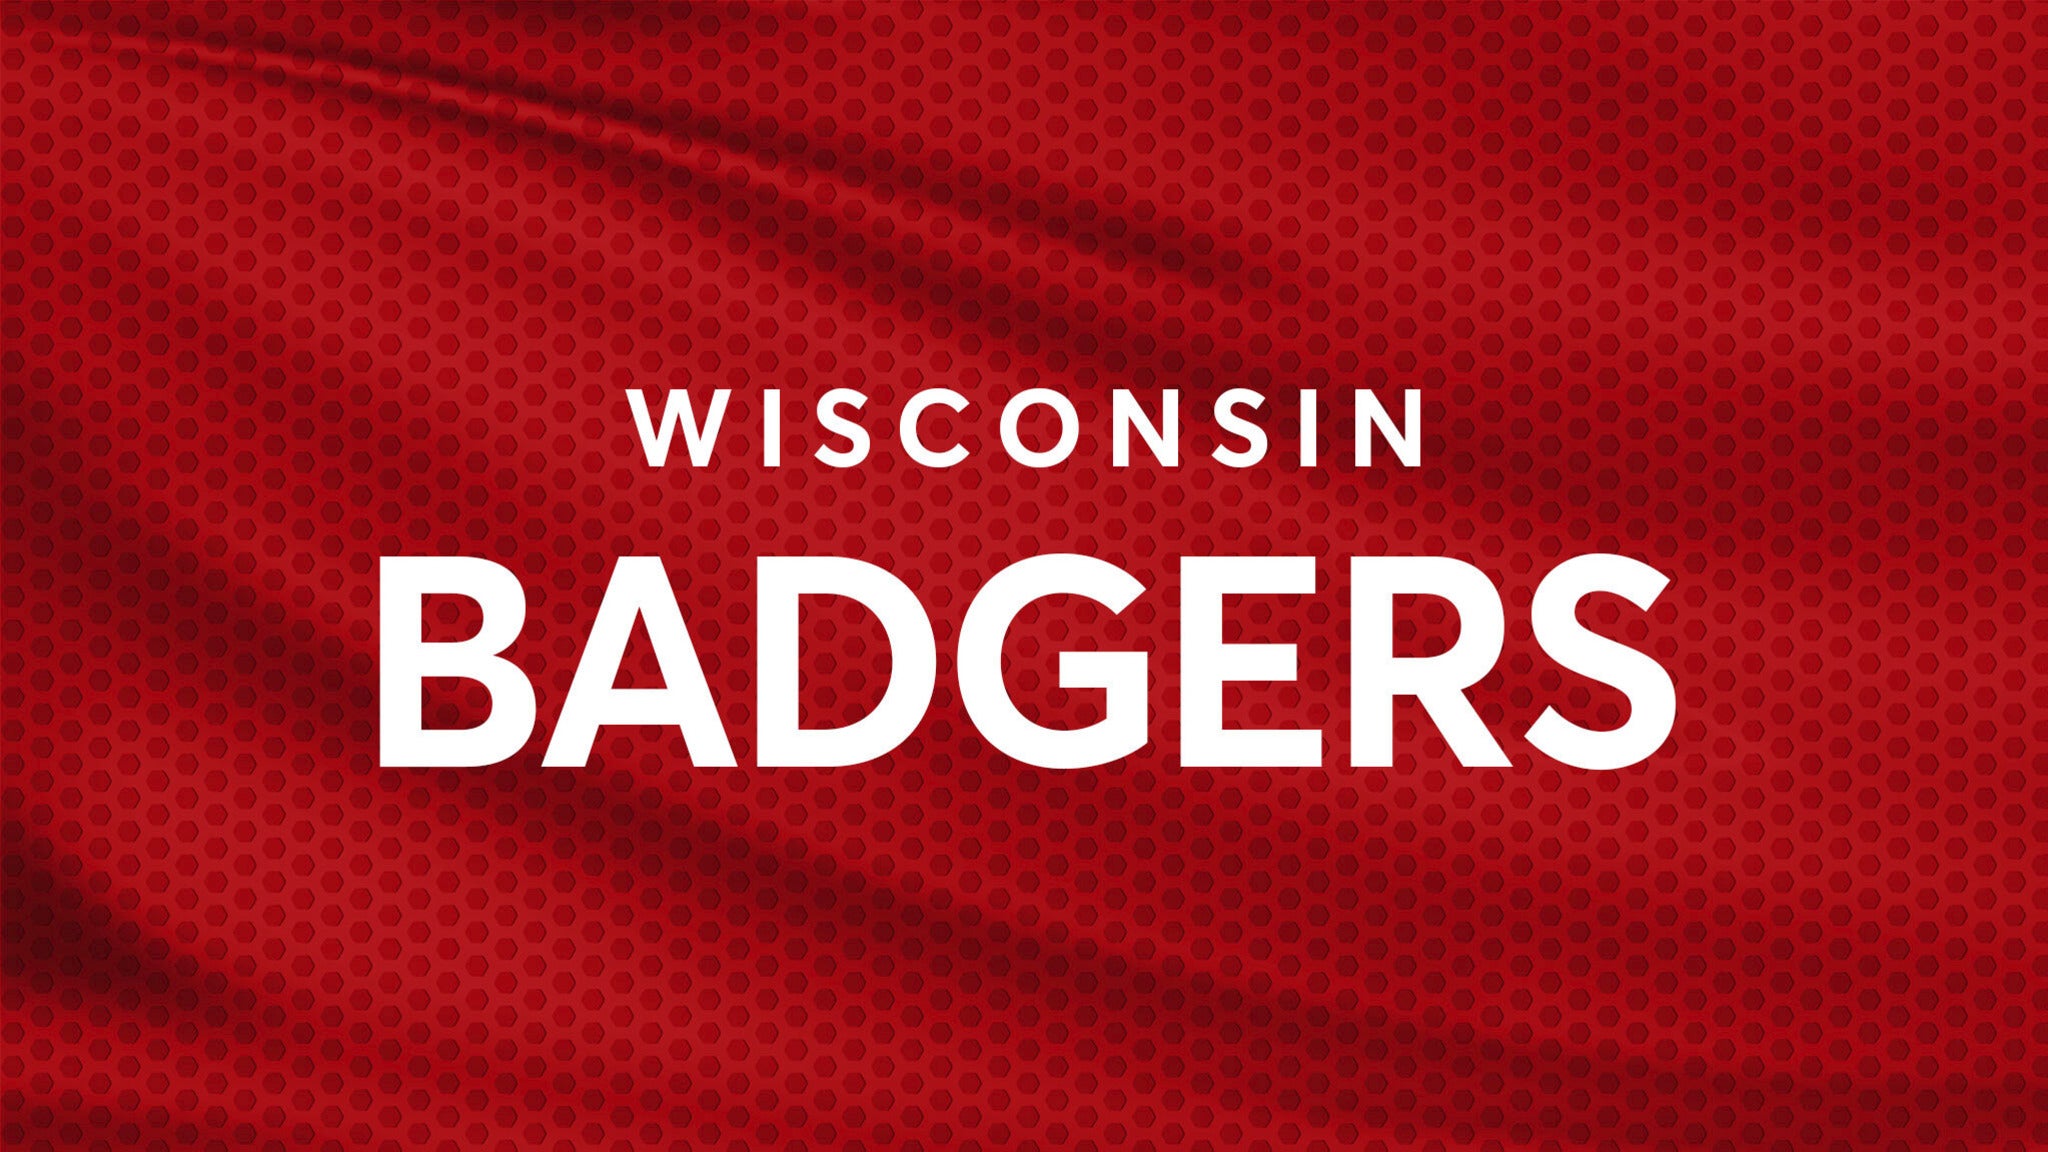 University of Wisconsin Badgers Volleyball presale information on freepresalepasswords.com